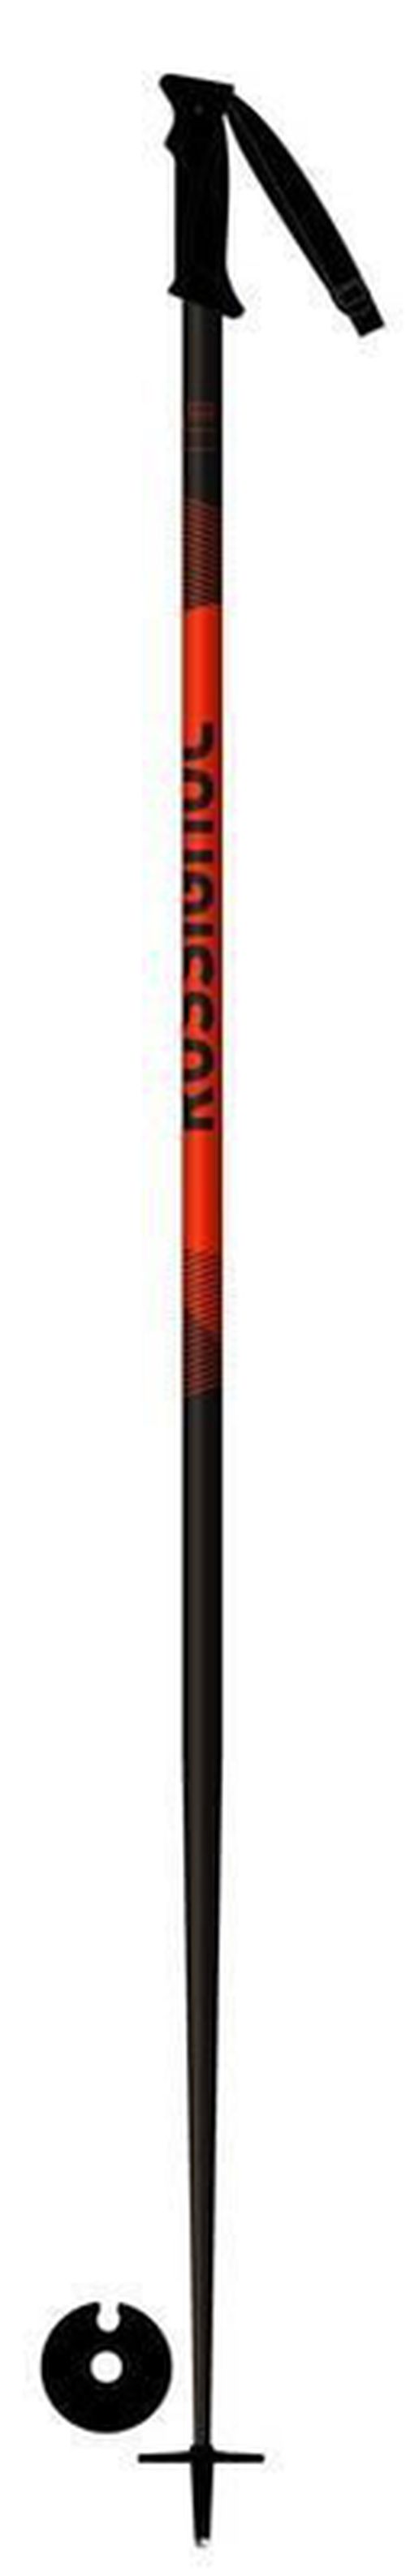 купить Лыжные палки Rossignol TACTIC BLACK/RED 130 в Кишинёве 